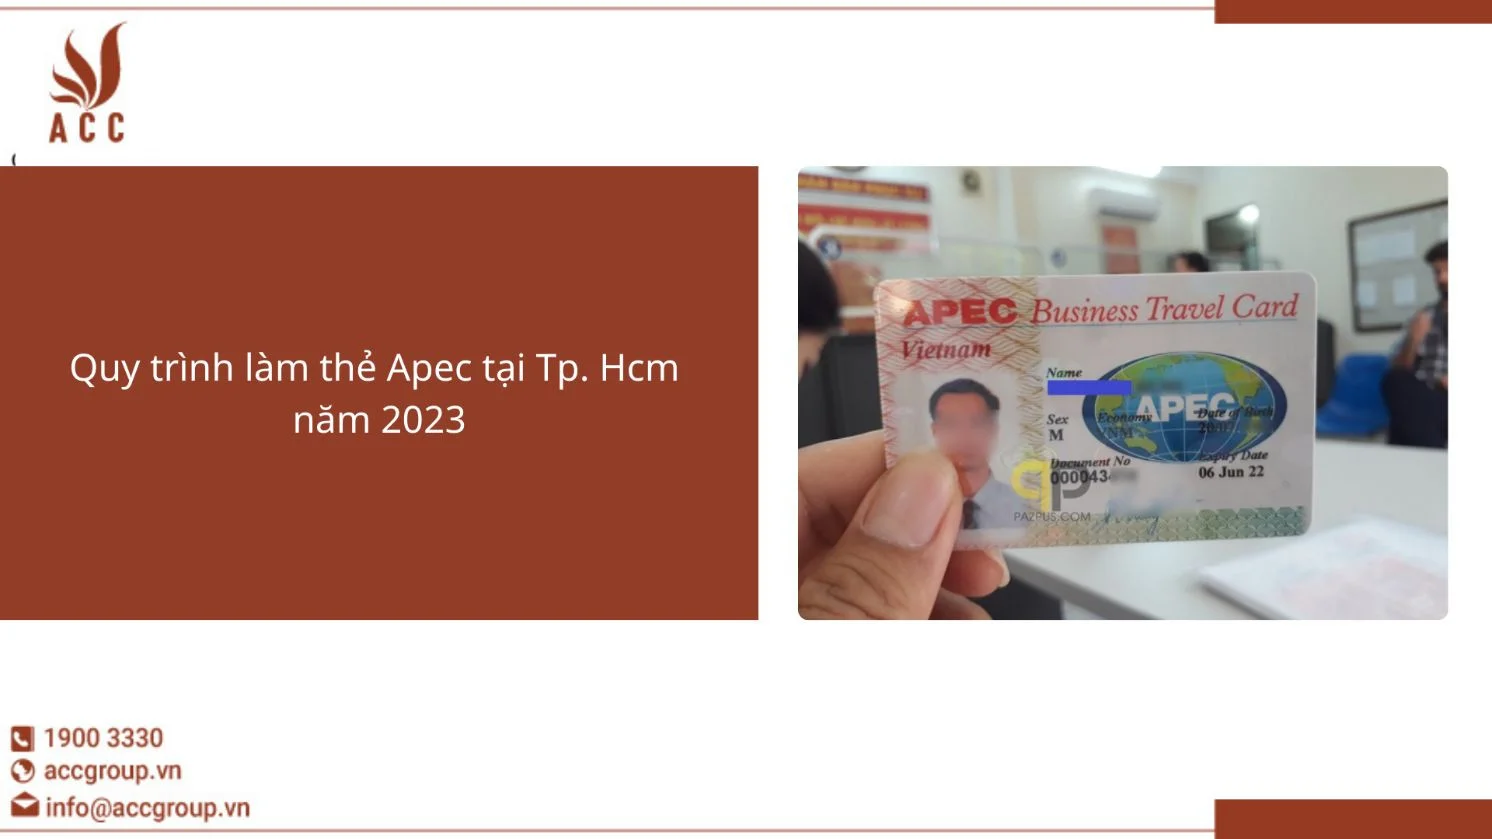 Quy trình làm thẻ Apec tại Tp. Hcm  năm 2023